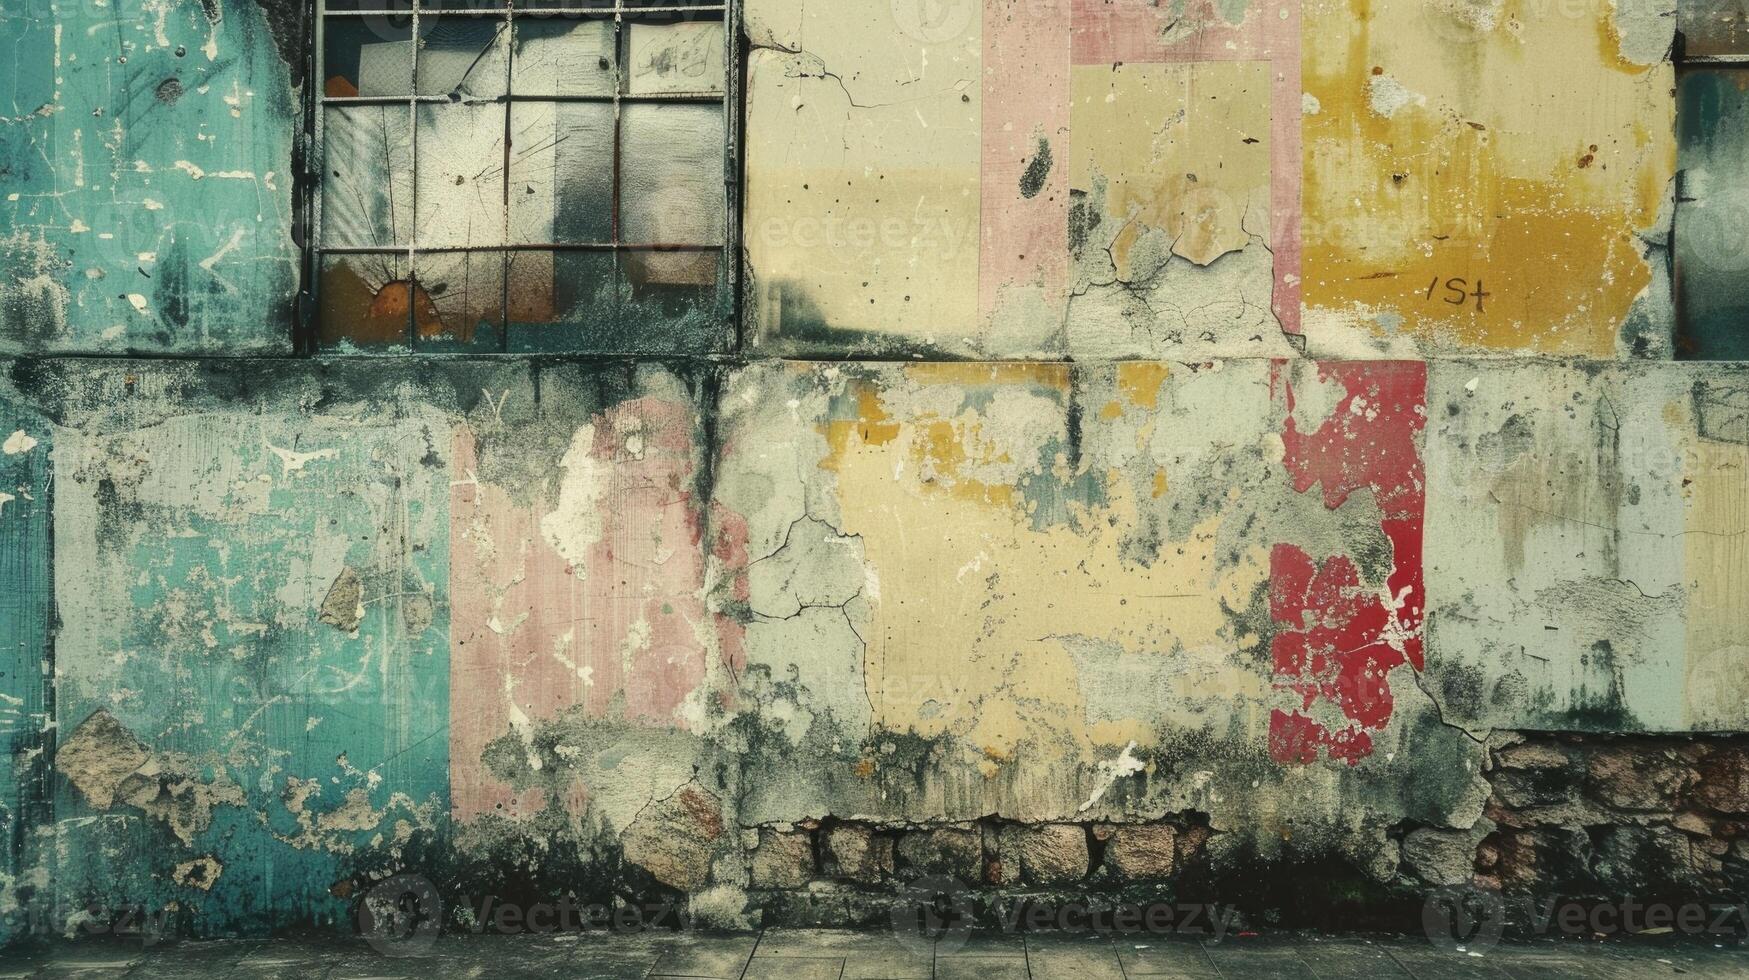 bunt Flecken unter bröckelt grau Farbe auf schäbig Mauer von grungy Gebäude auf Straße foto